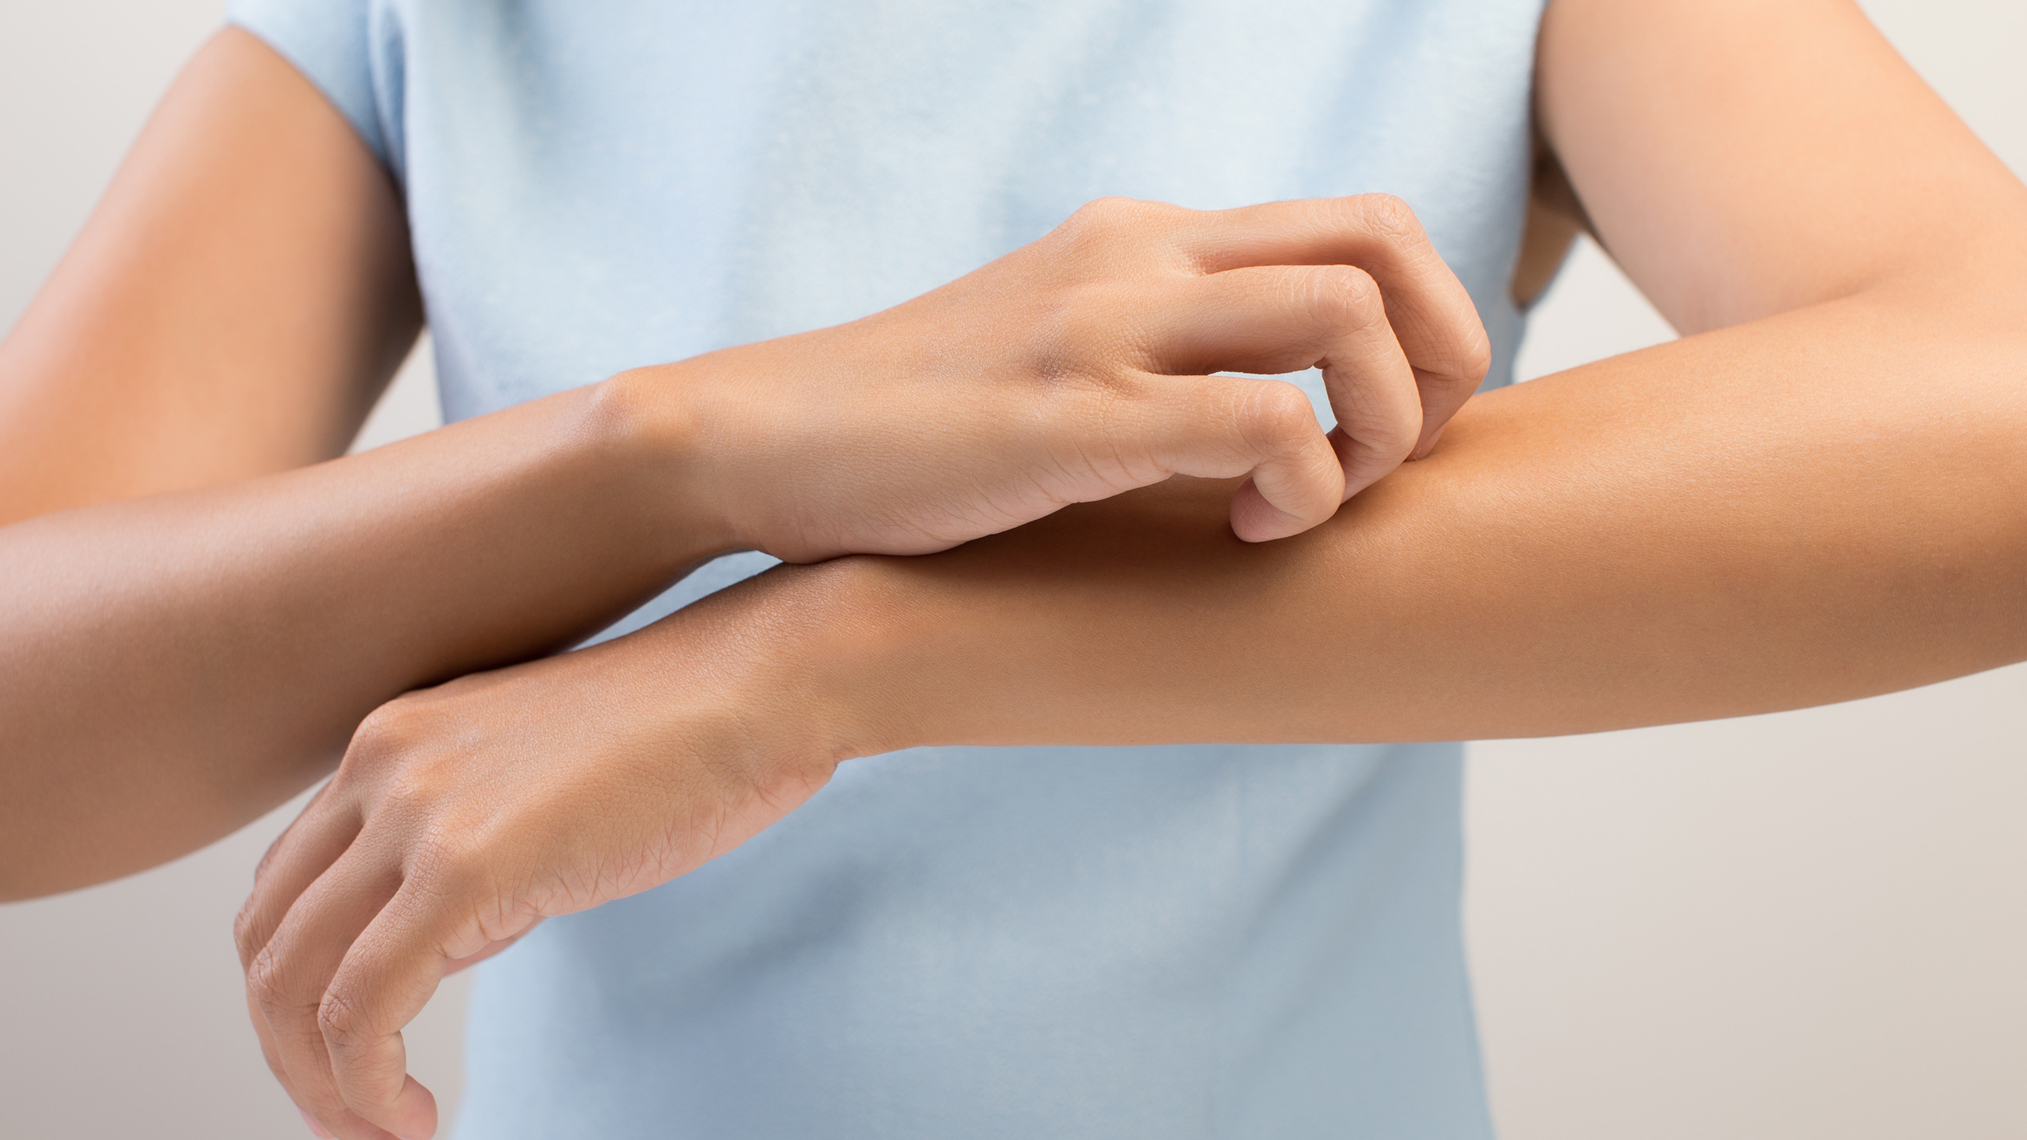 Frau kratzt sich aufgrund eines Mückenstichs am Arm